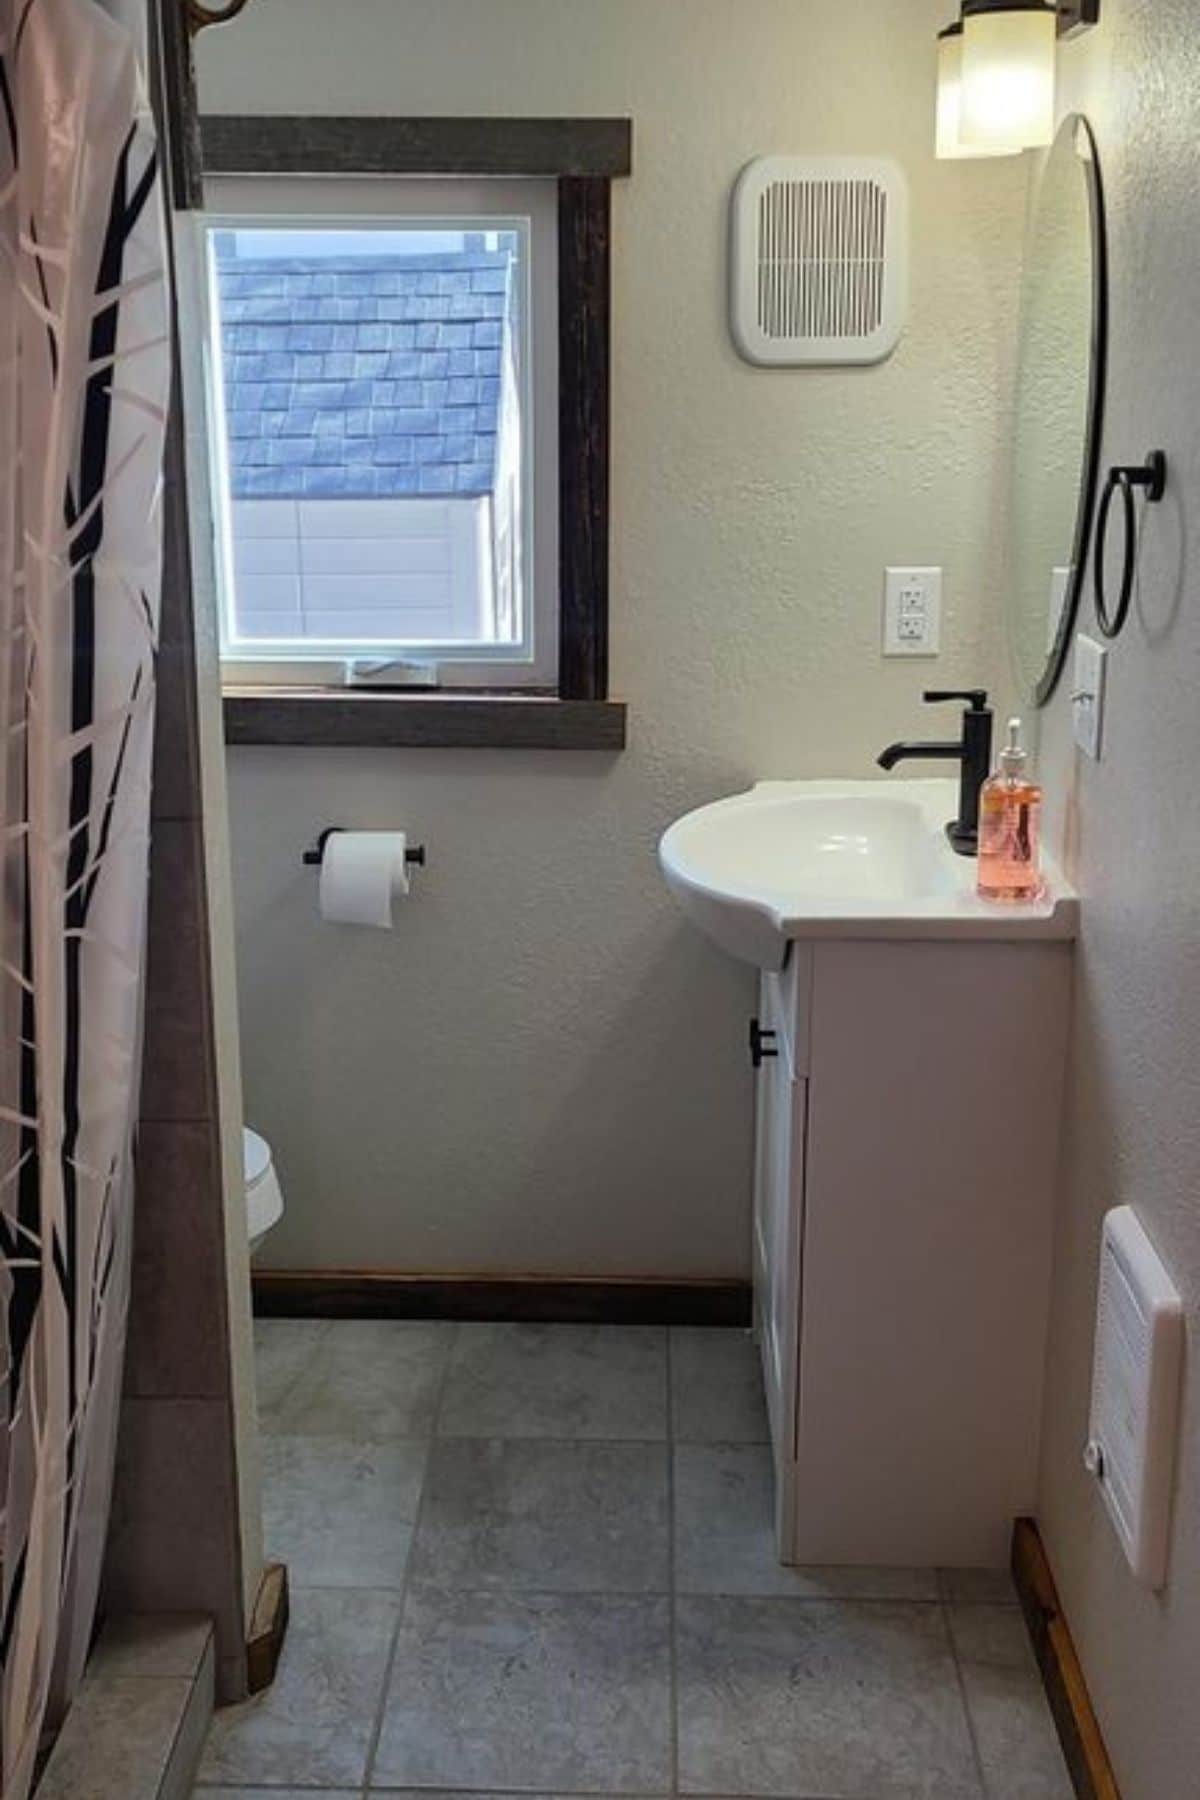 white vanity against bathroom wall